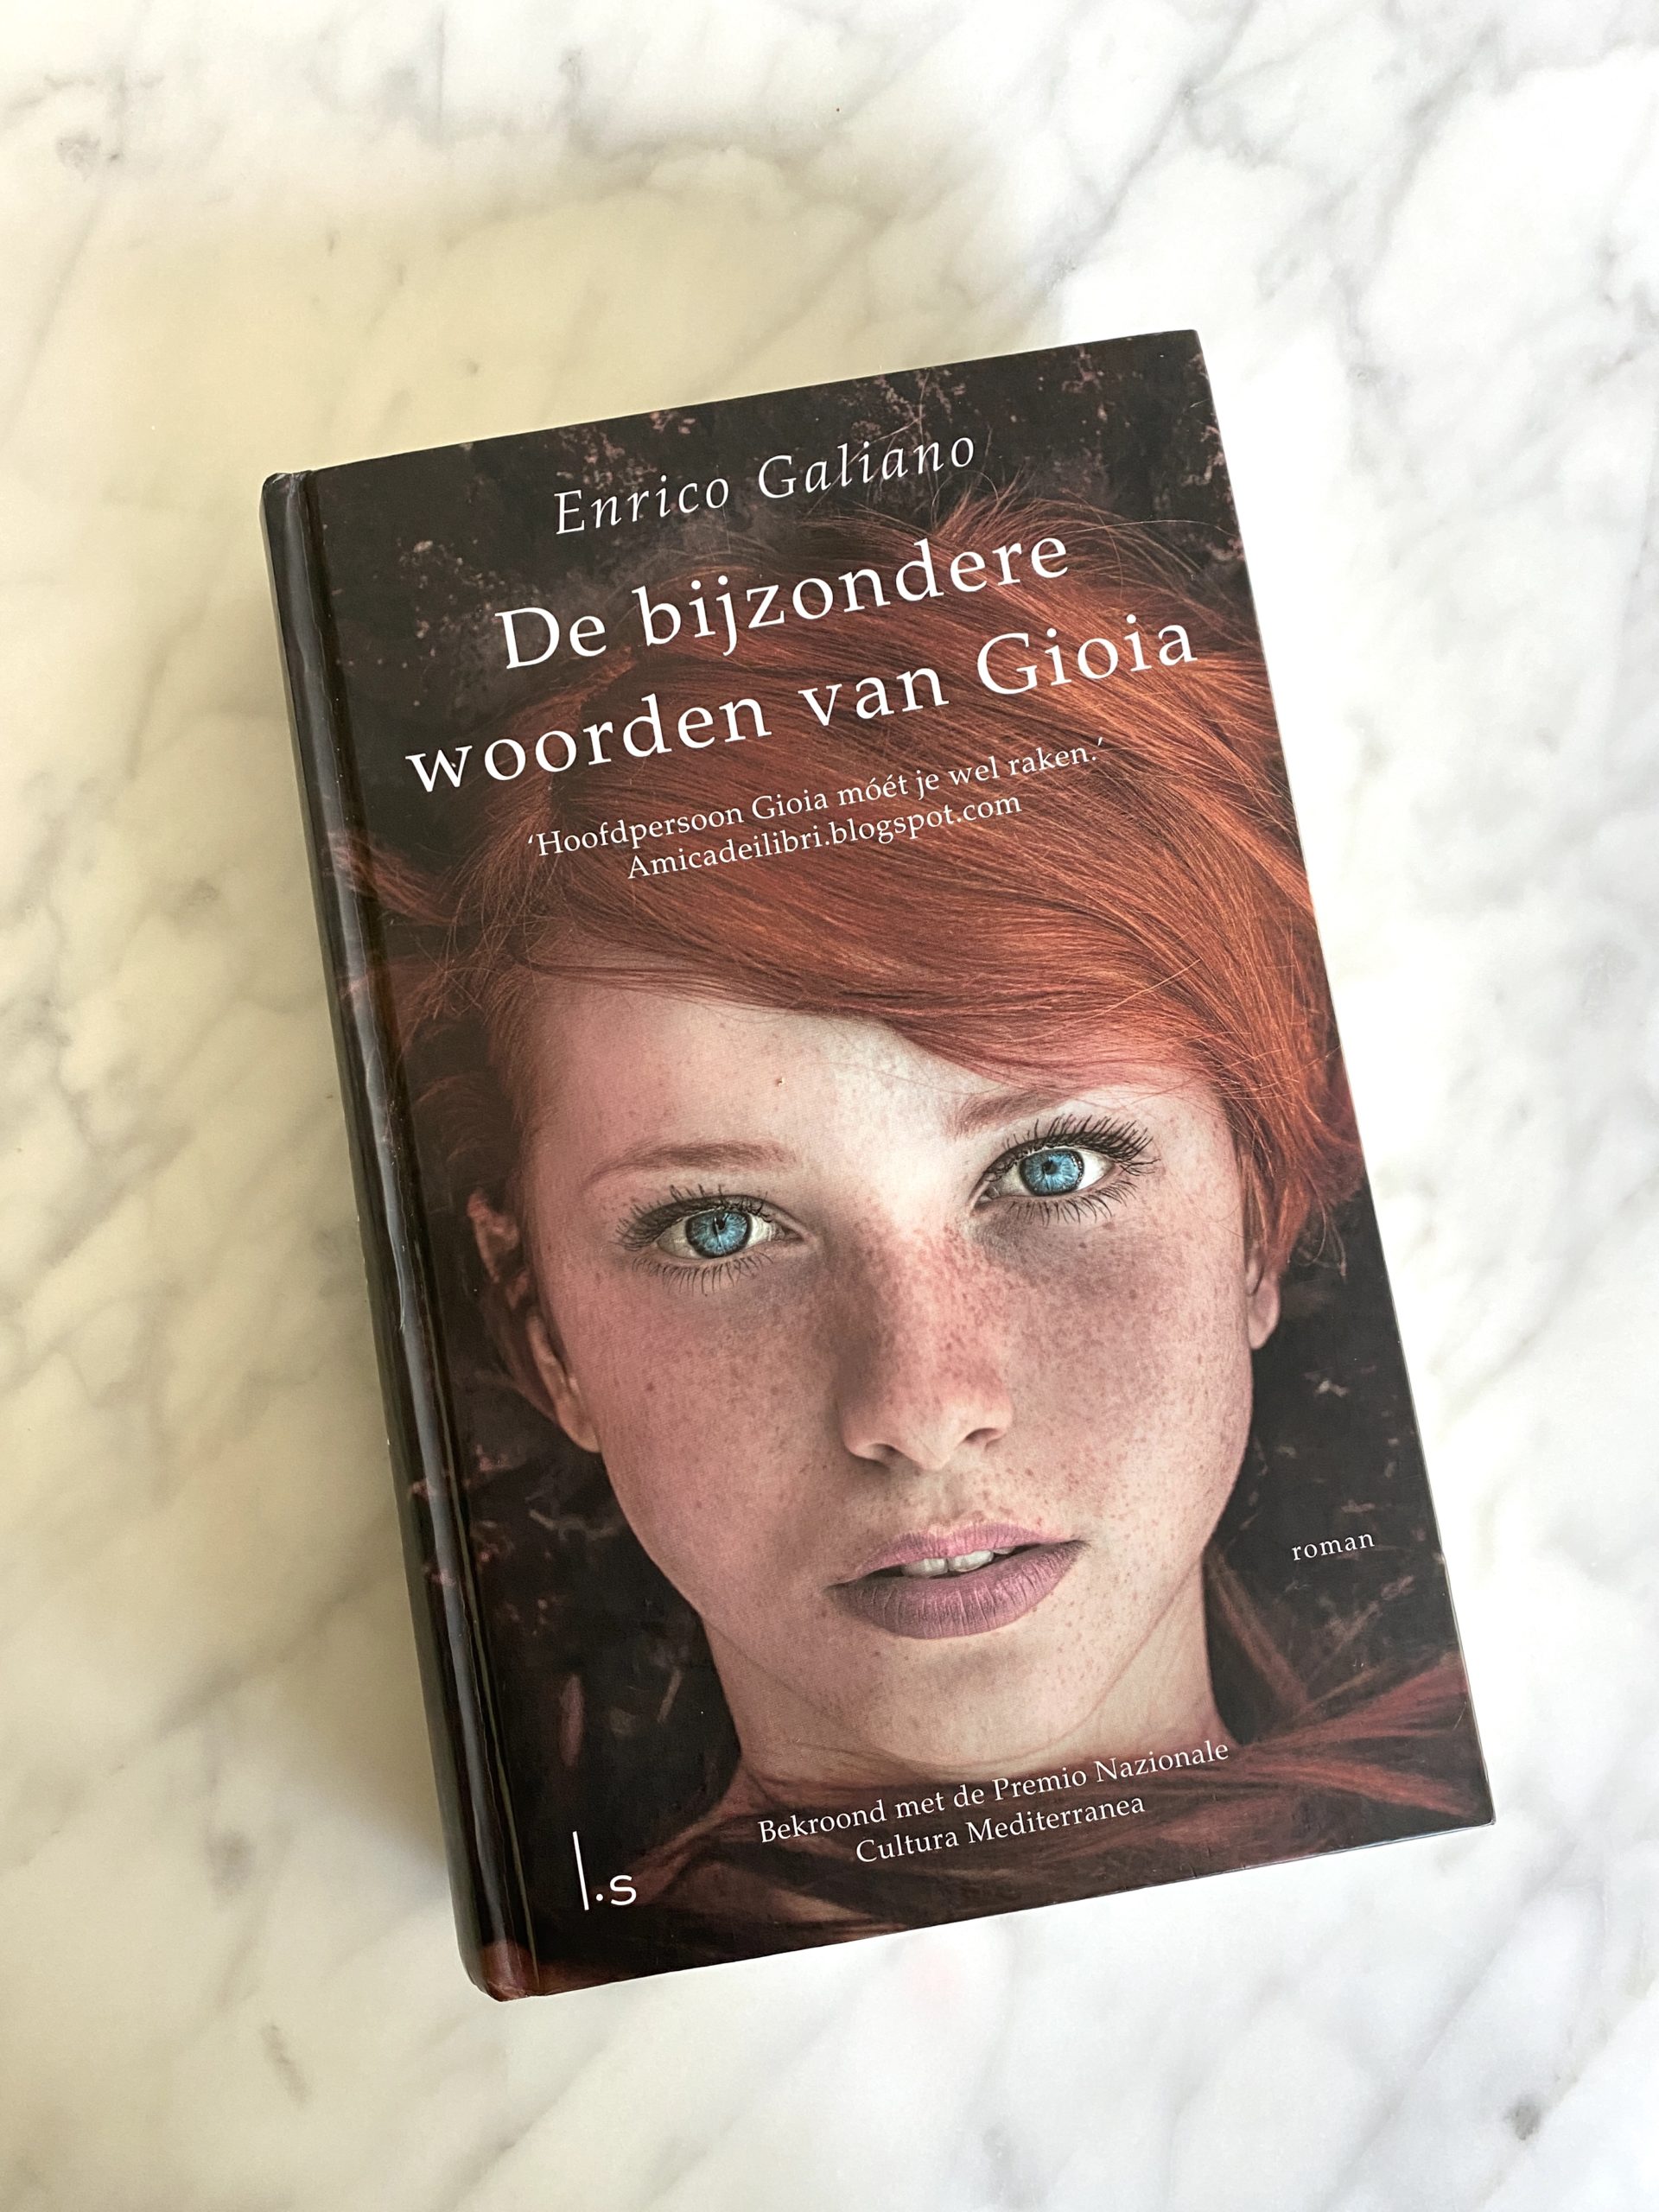 De bijzondere woorden van Gioia | boekwijzer